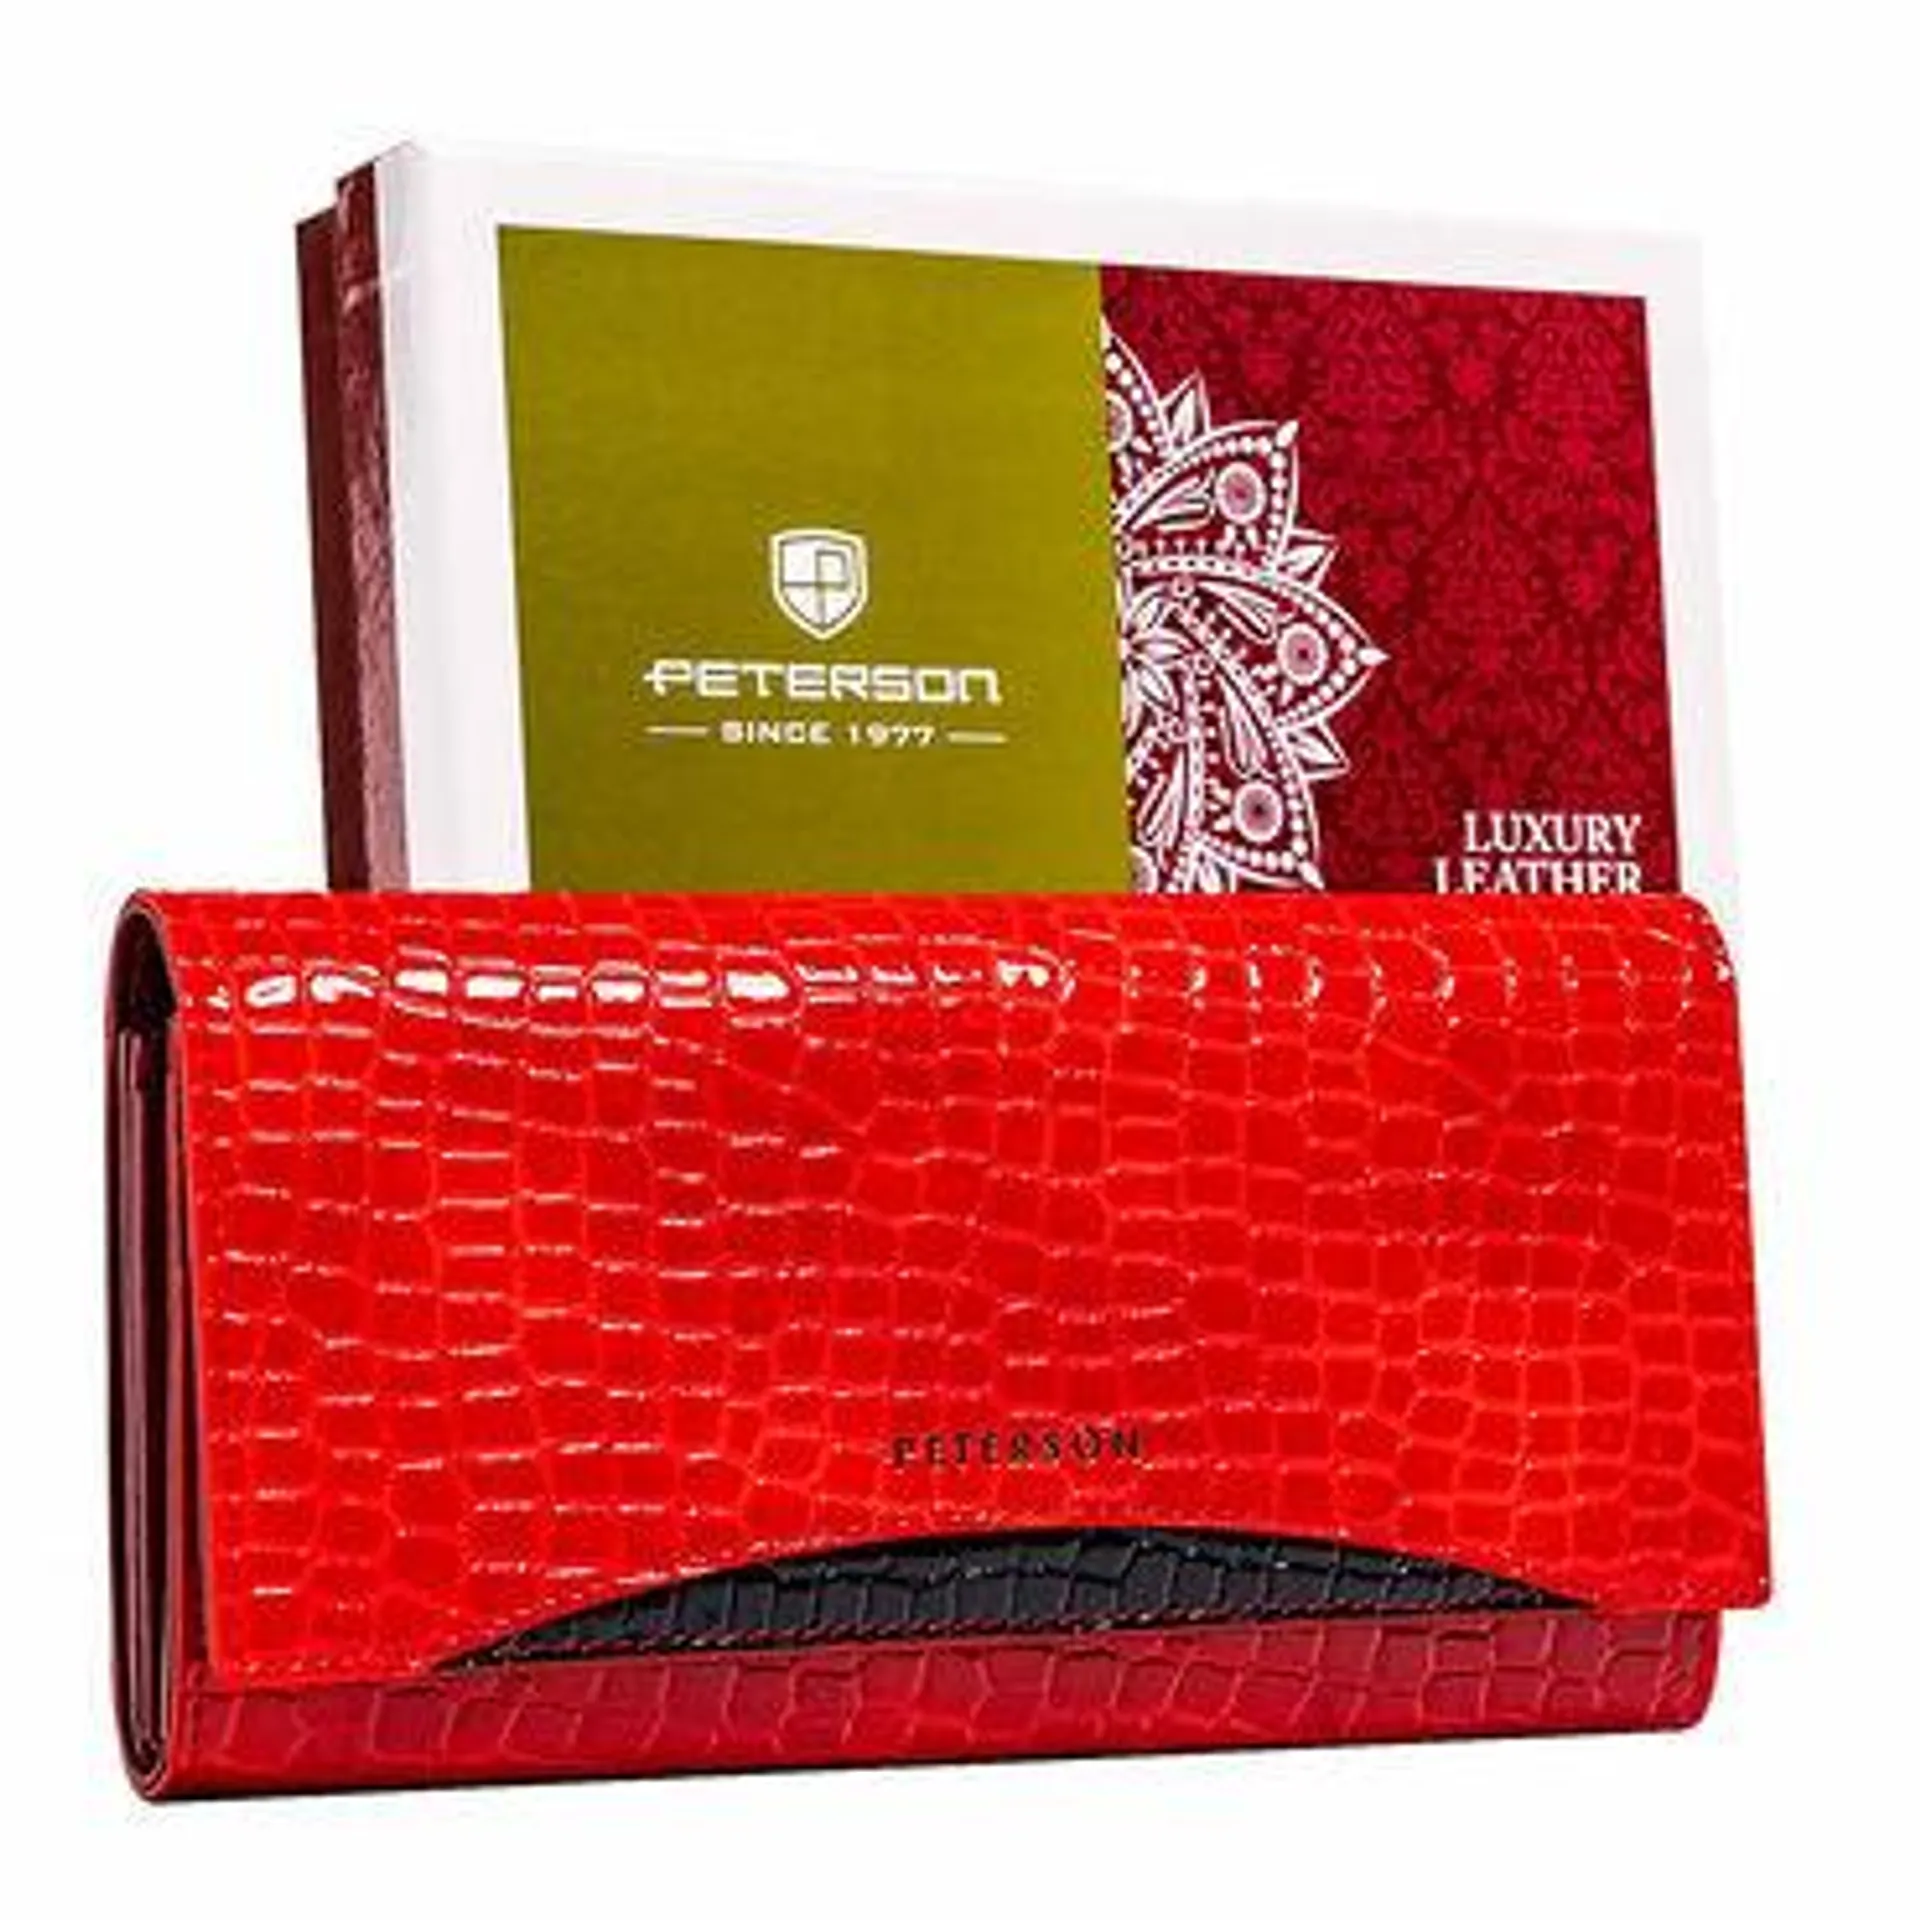 Czerwony portfel lakierowany damski Peterson, 9,5 x 18,5 x 3 cm, na zatrzask